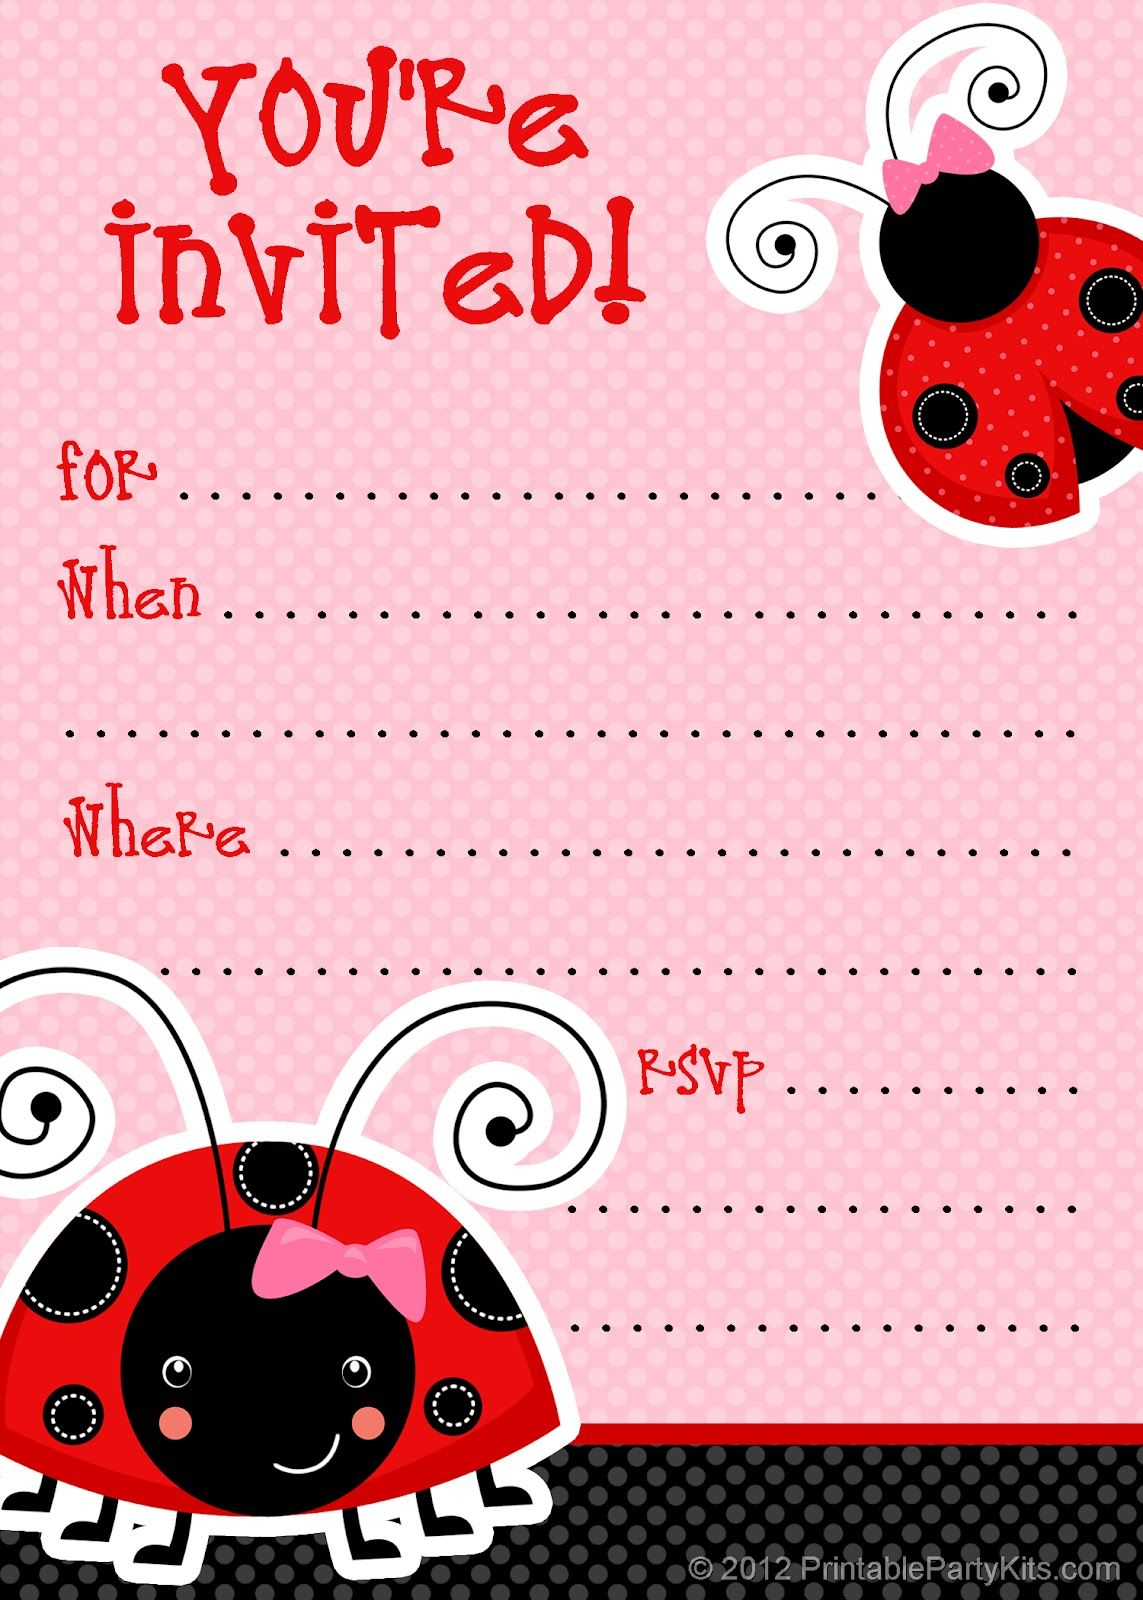 1) Free Printable Ladybug Invitation Blank Template. 2 Inside Blank Ladybug Template